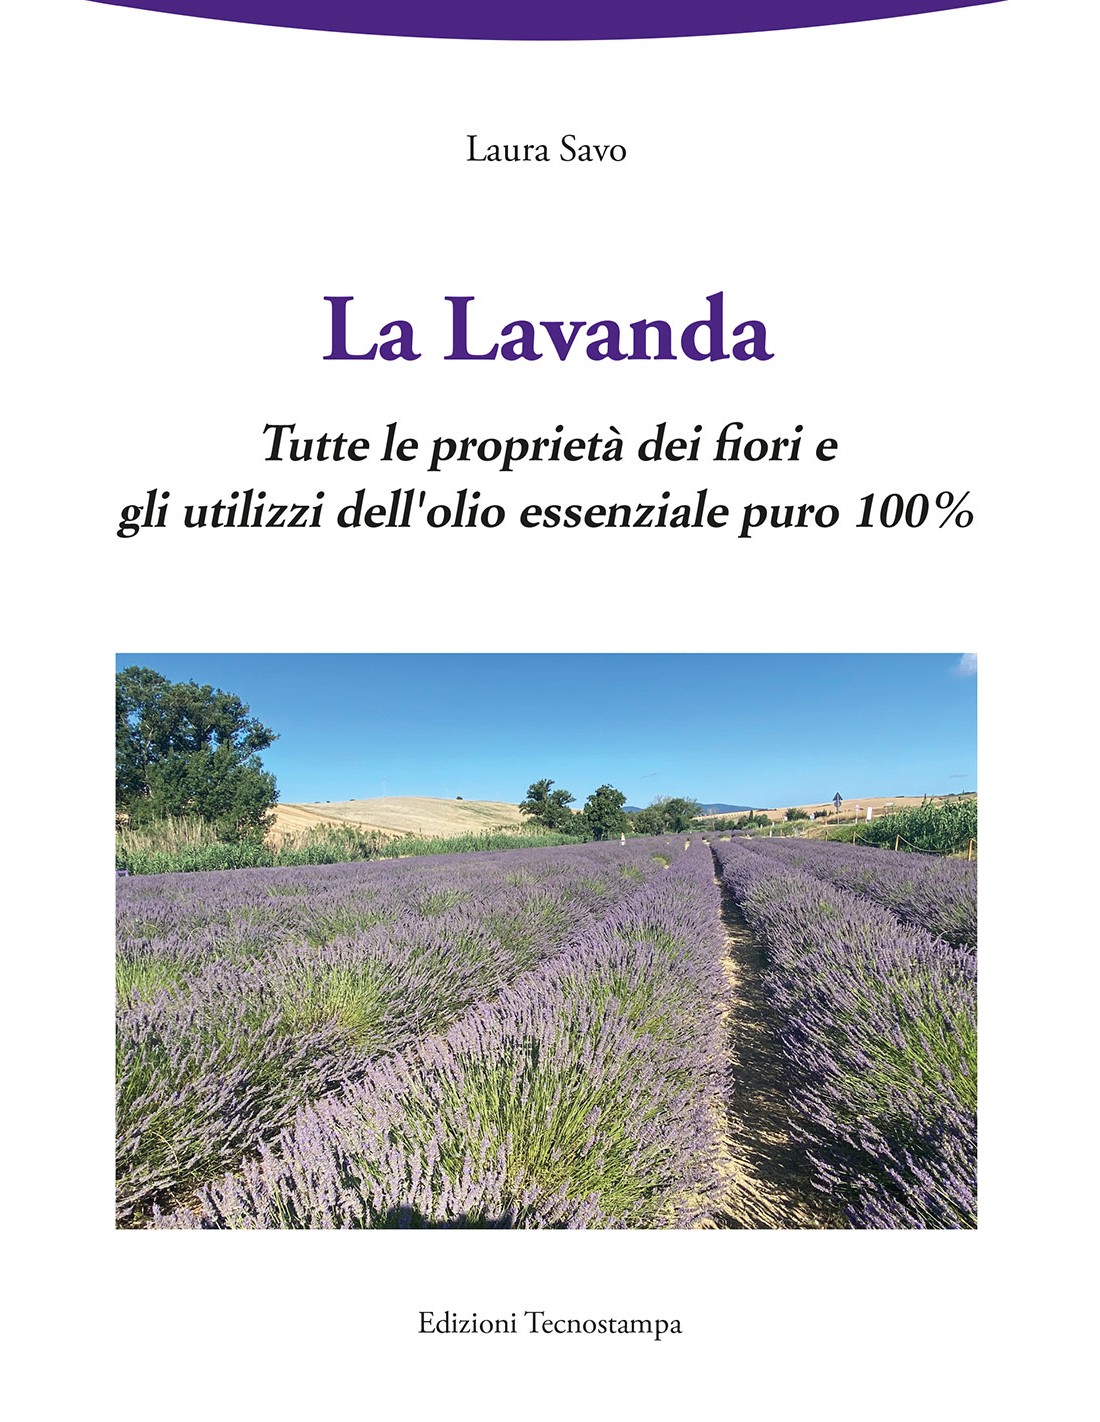 La Lavanda - Tutte le proprietà dei fiori e gli utilizzi dell'olio  essenziale puro 100% di Laura Savo